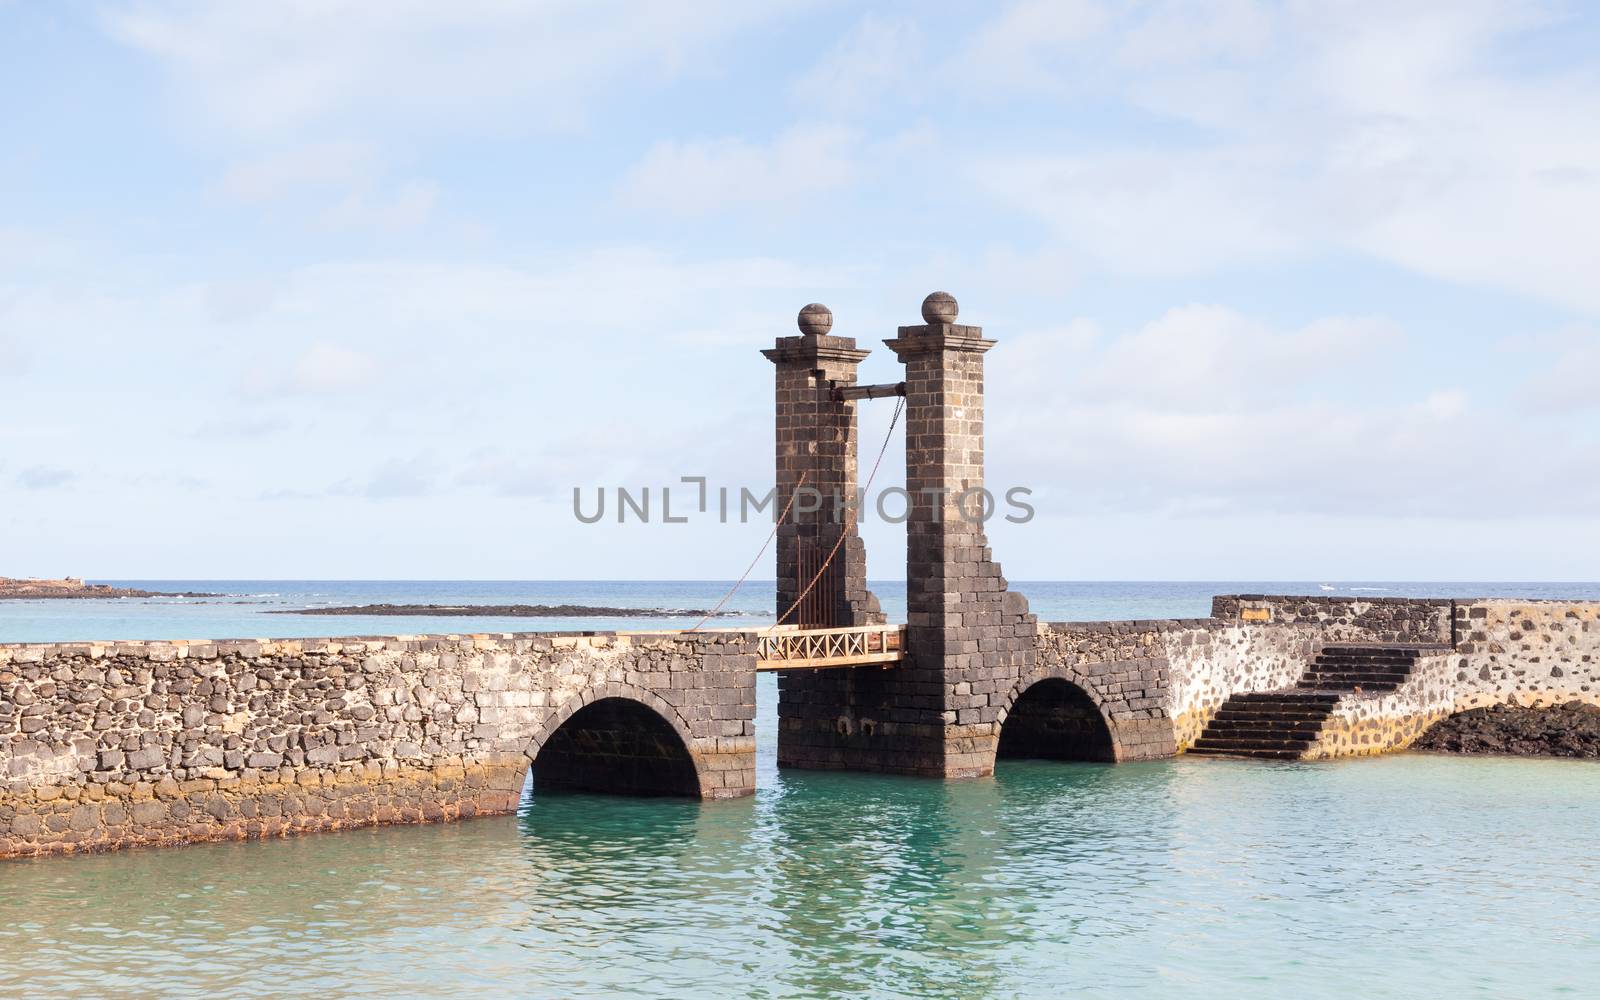 Puente de las Bolas leads to San Gabriel Castle in the port city of Arrecife on the Spanish island of Lanzarote.